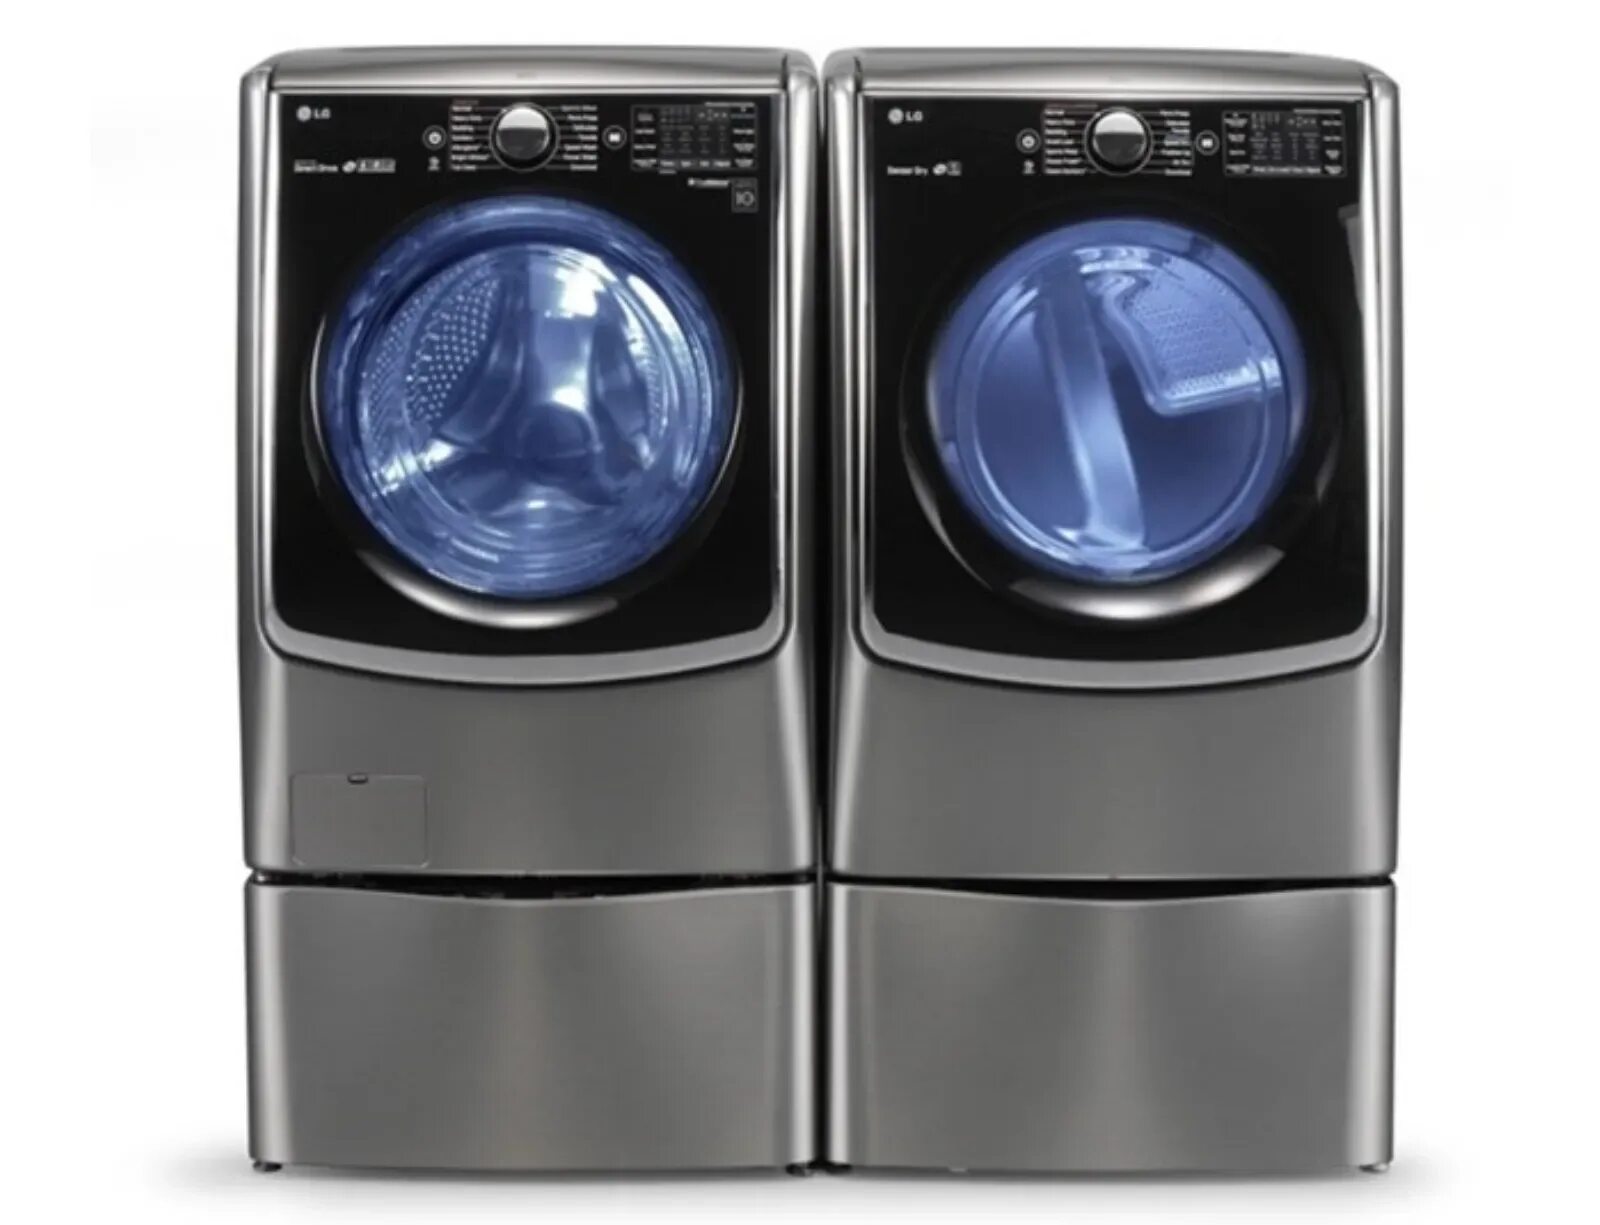 Вторая стиральная машина. LG Twin Wash стиральная. Новая стиральная машина LG TWINWASH. Стиральная машина Хайер с2барабанами. Стиральная машина с сушкой LG Twin Wash TW 256 W.